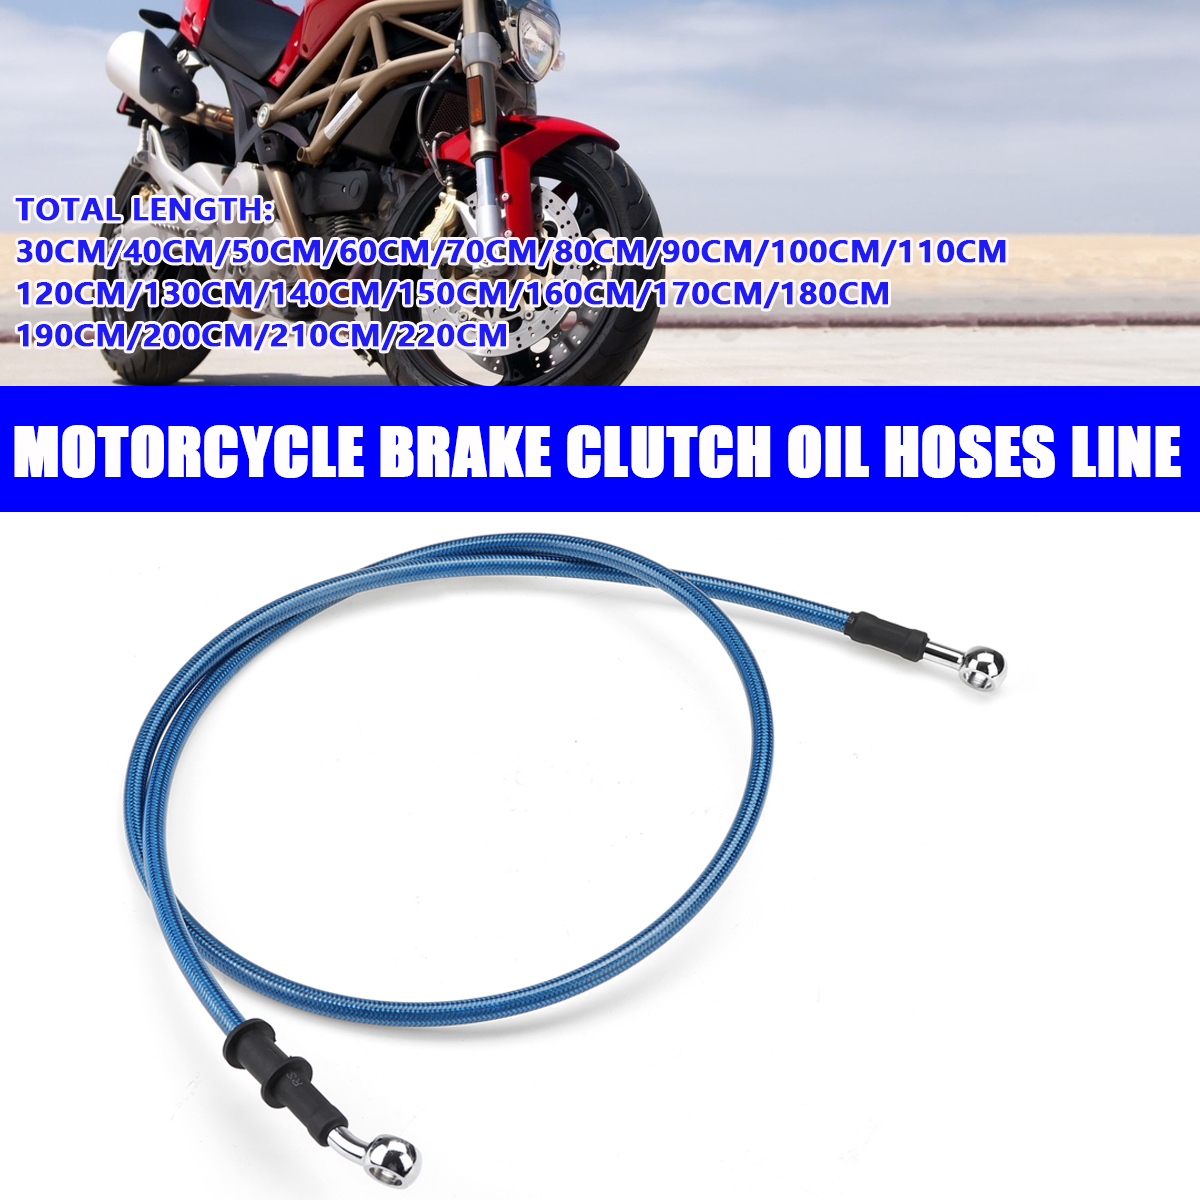 30 ซม. - 220 ซม. รถจักรยานยนต์เบรคคลัทช์เบรคสายน้ำมันสายท่อสีน้ำเงิน สายเบรค Motorcycle Nylon Braided Brake Clutch Oil Hoses Line Pipe Cable 28°Banjo Bolts